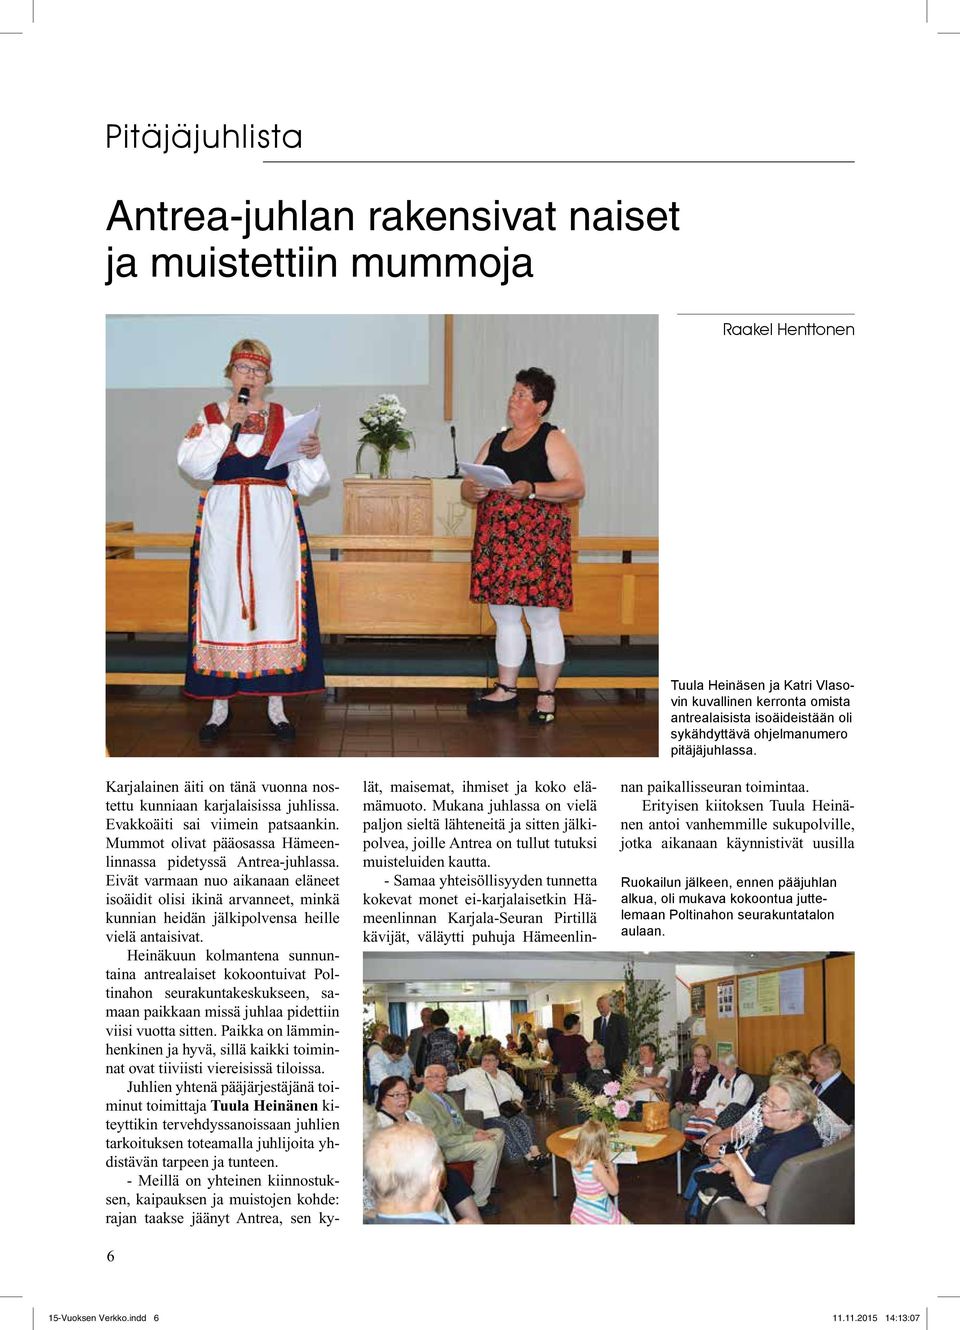 Heinäkuun kolmantena sunnuntaina antrealaiset kokoontuivat Poltinahon seurakuntakeskukseen, samaan paikkaan missä juhlaa pidettiin viisi vuotta sitten.